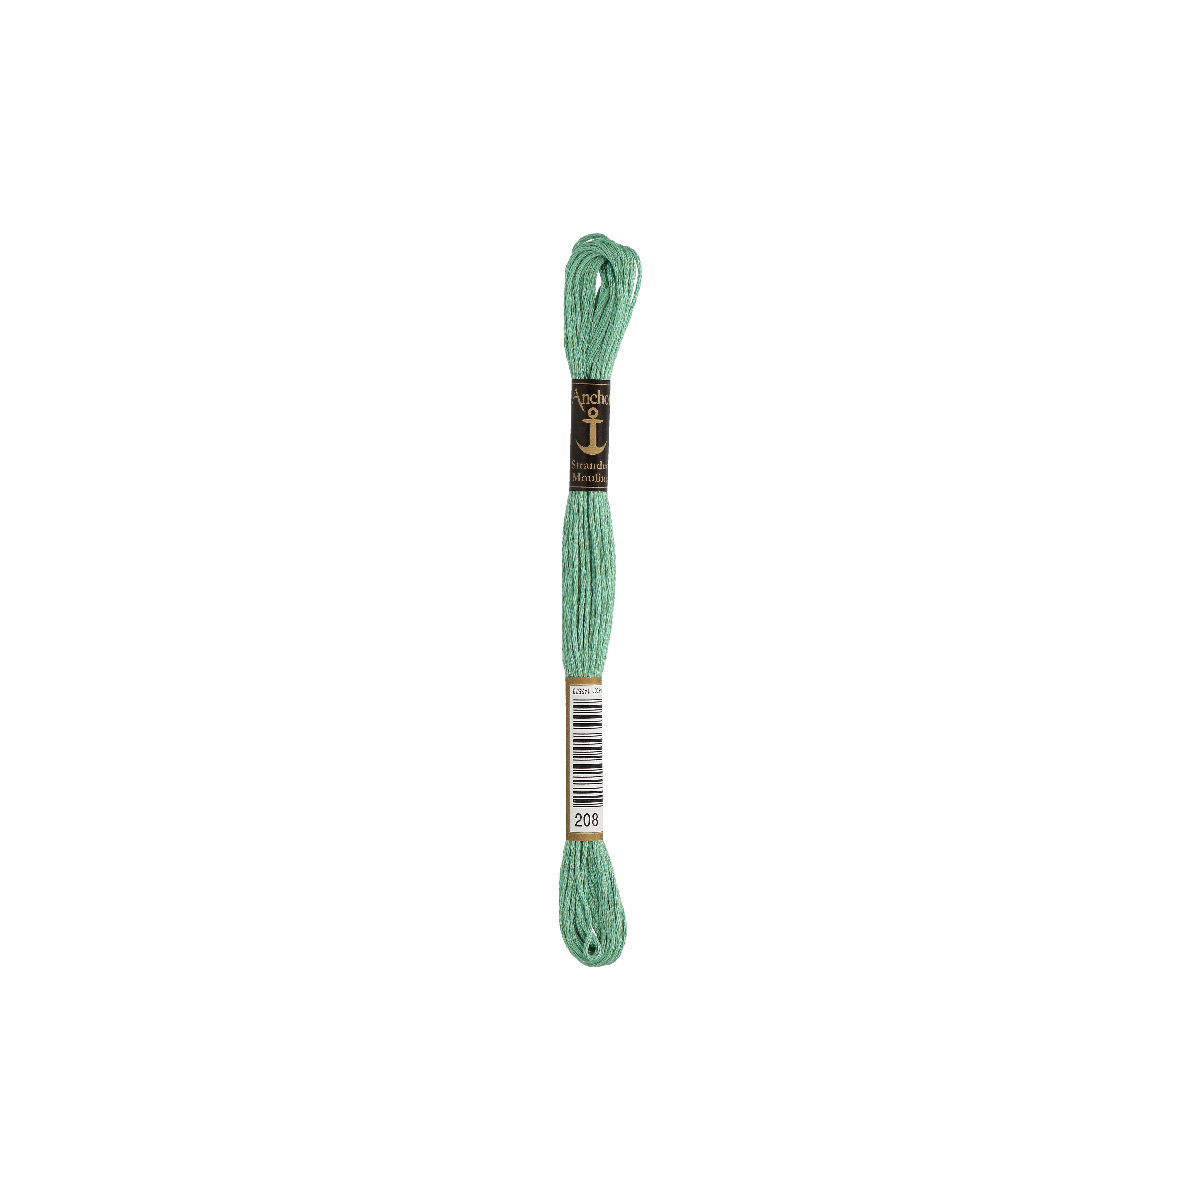 Anchor Torsade 8m, vert menthe, coton, couleur 208, 6 fils